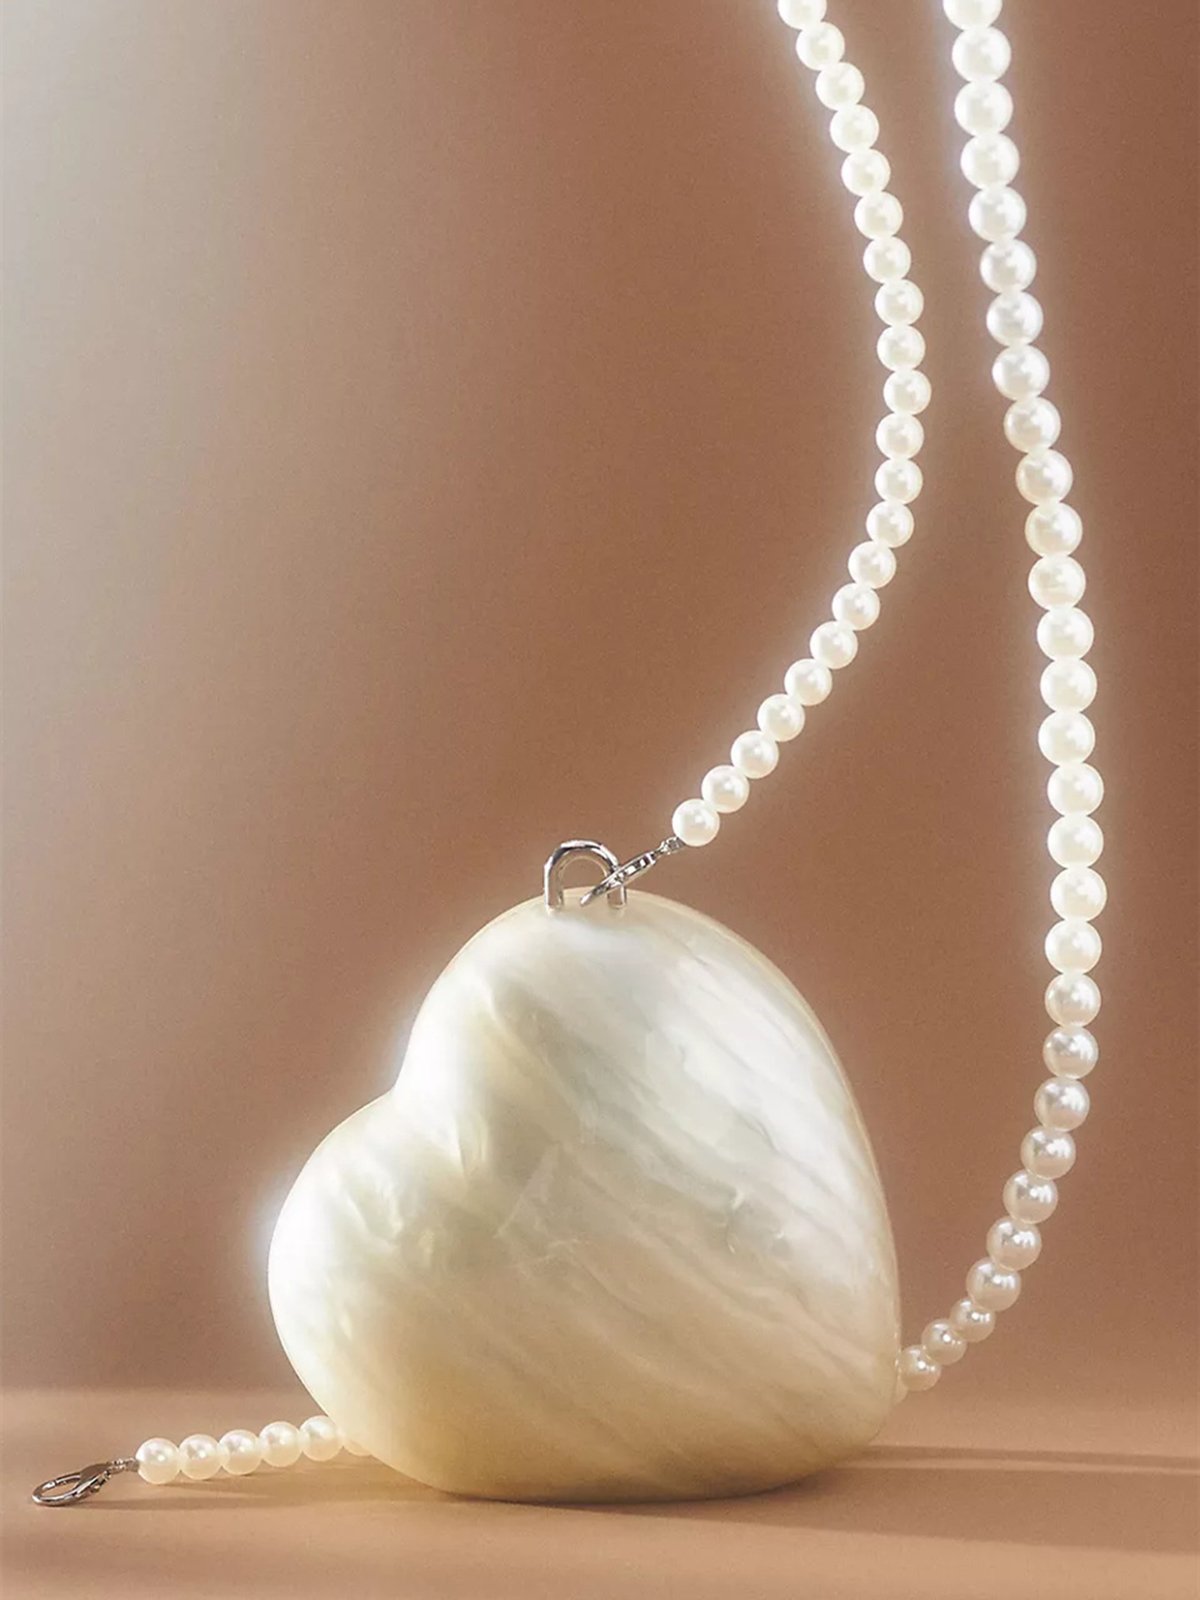 Elegant Heart Mini Acrylic Handbag with Imitation Pearl Crossbody Strap